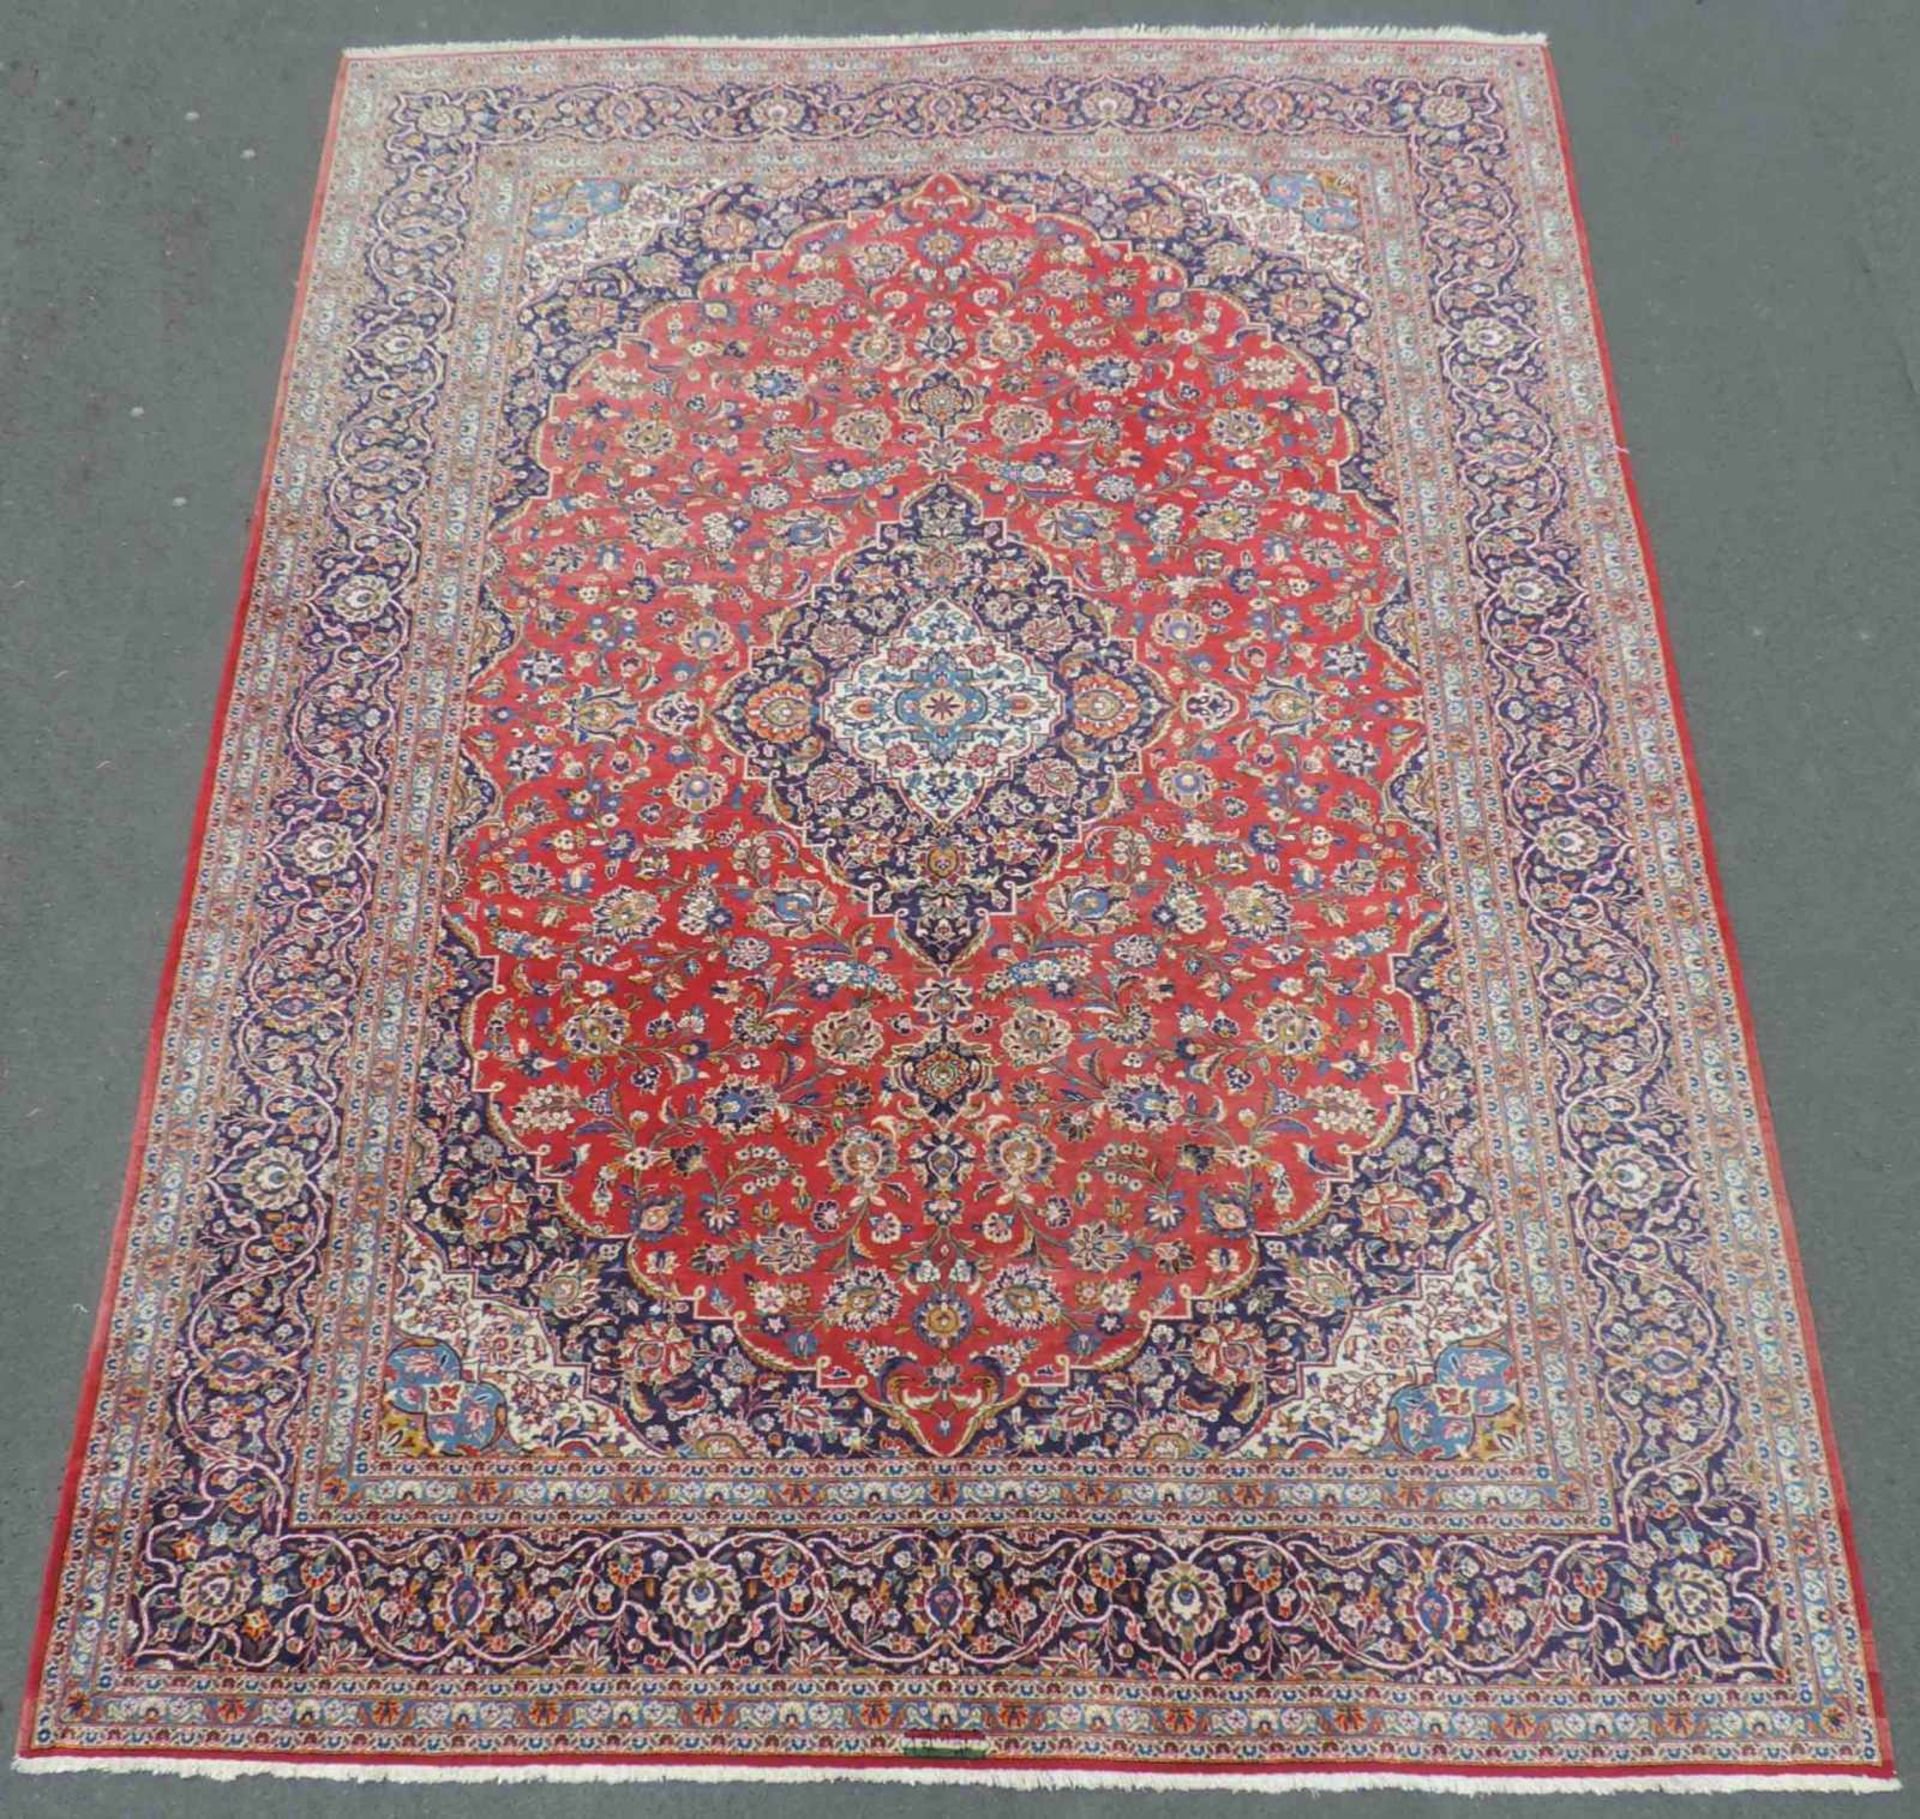 Keschan Meisterteppich signiert. Iran. 413 cm x 304 cm. Handgeknüpft. Wolle auf Baumwolle. Keshan